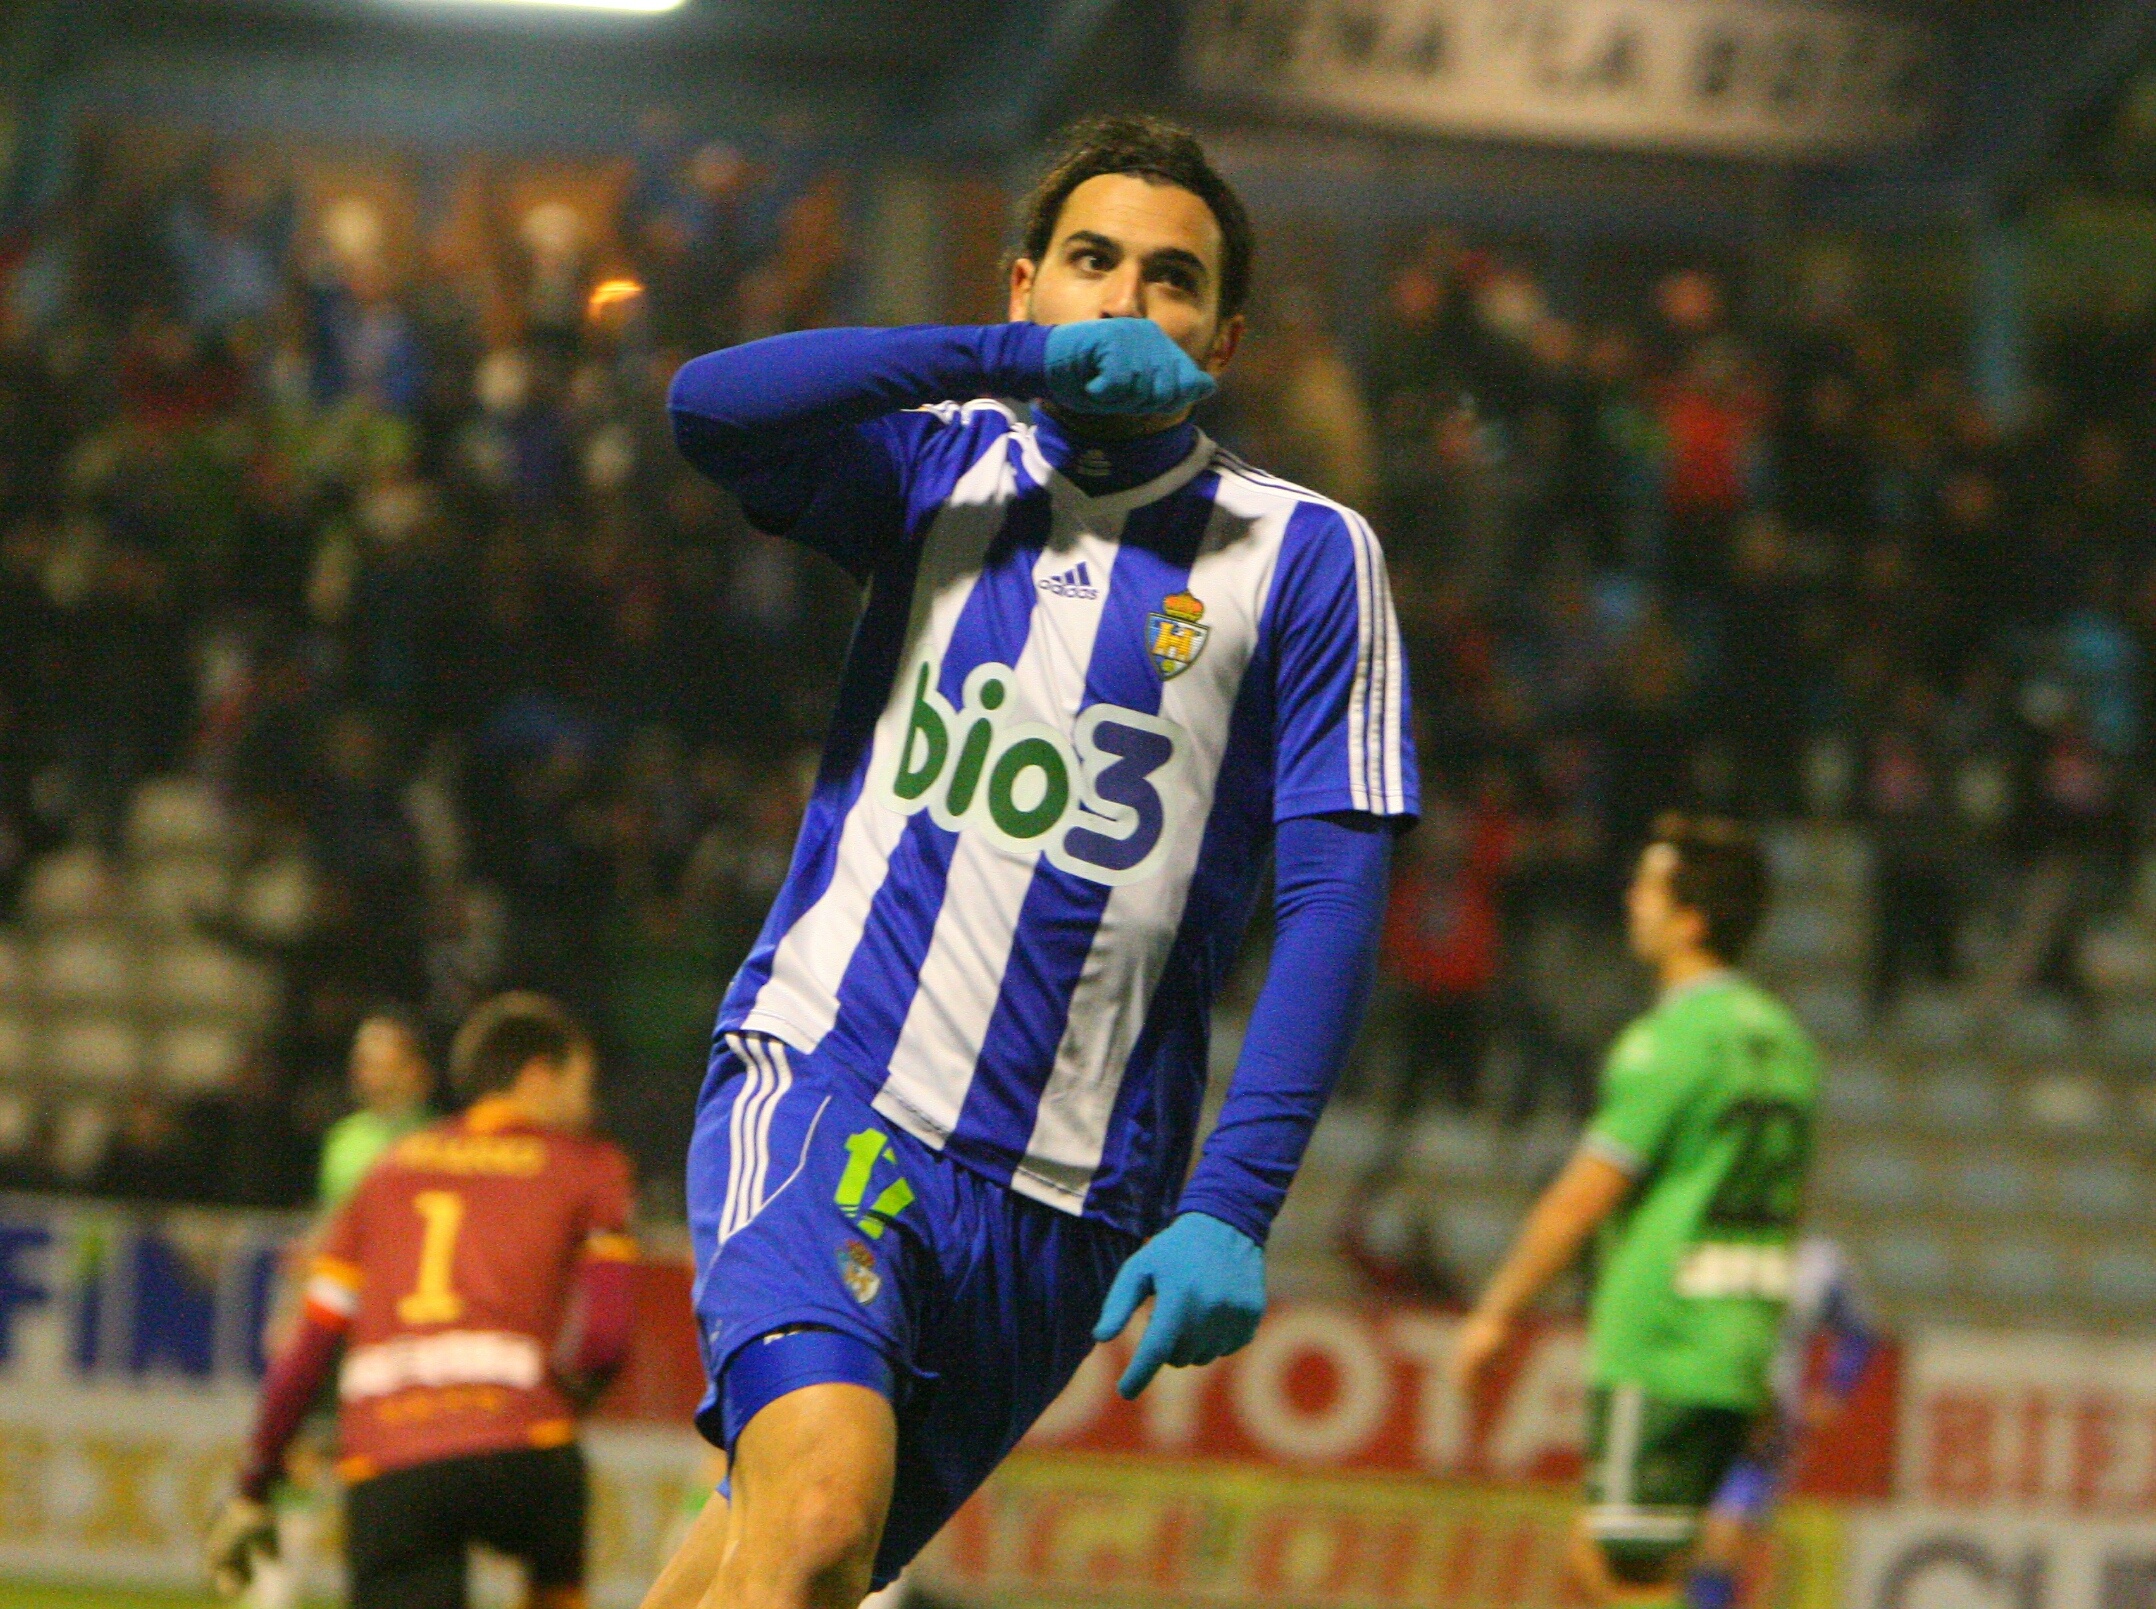 El futbolista de la Ponferradina José Andrés Rodríguez Gaitán, Andy, celebra un tanto anotado con el conjunto berciano. SDPonferradina